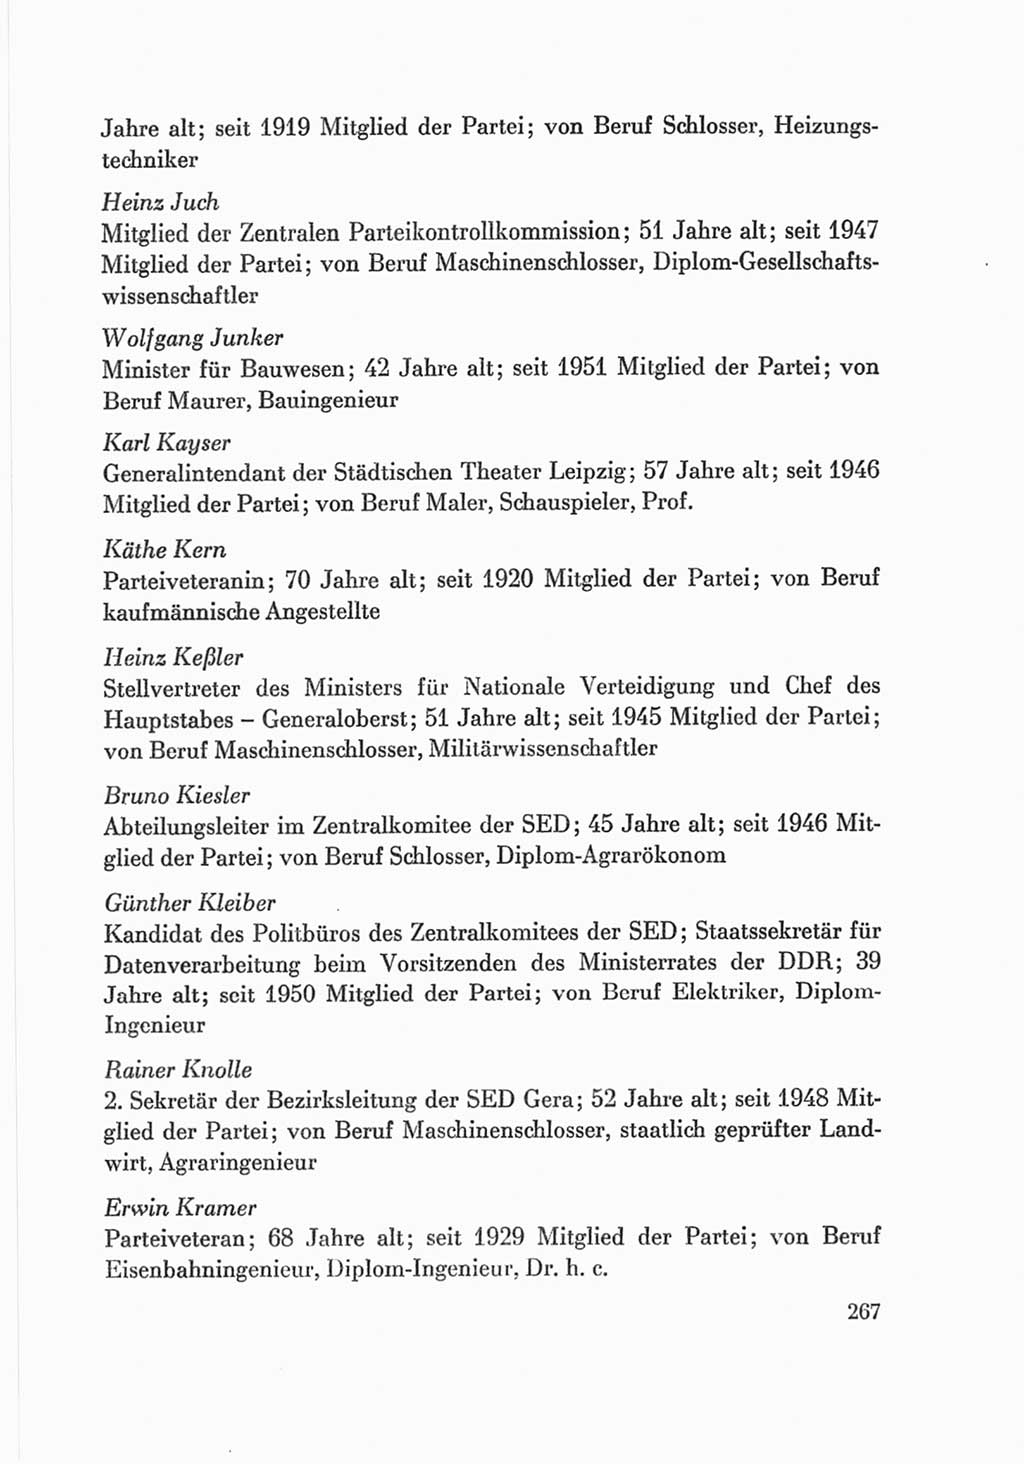 Protokoll der Verhandlungen des Ⅷ. Parteitages der Sozialistischen Einheitspartei Deutschlands (SED) [Deutsche Demokratische Republik (DDR)] 1971, Band 2, Seite 267 (Prot. Verh. Ⅷ. PT SED DDR 1971, Bd. 2, S. 267)